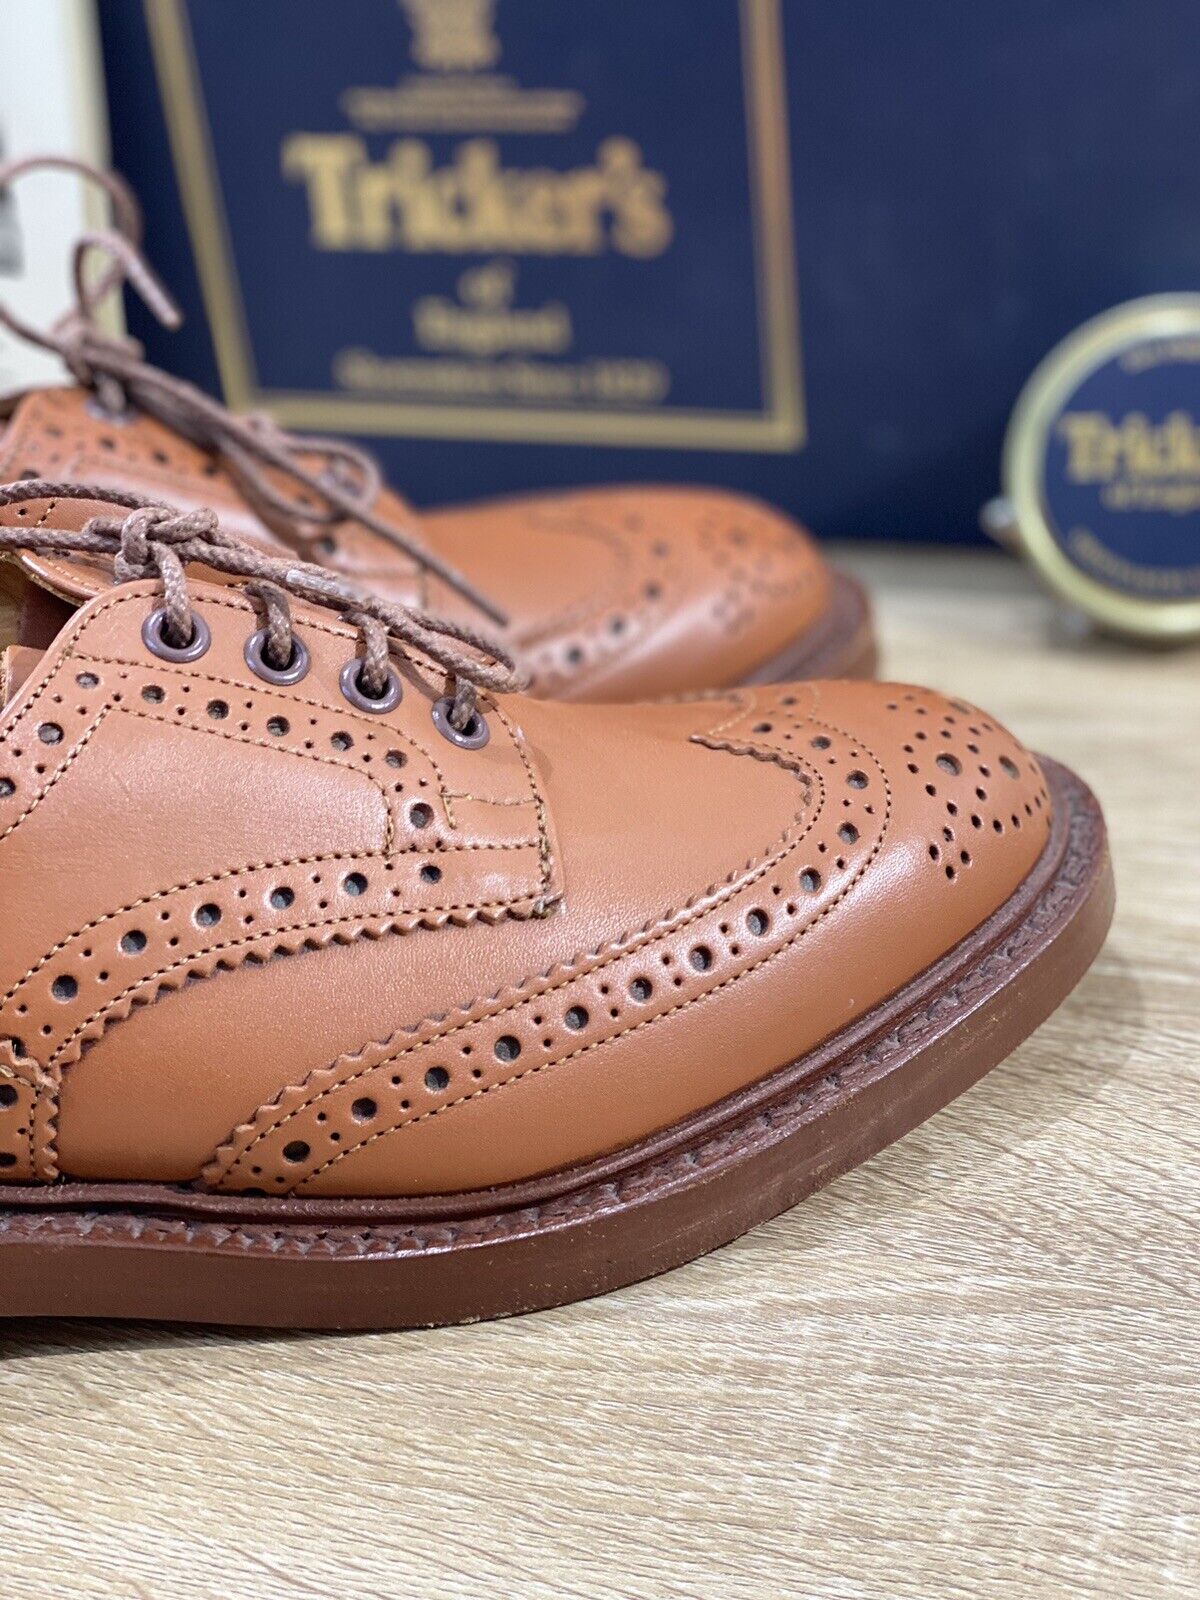 Tricker’s Bourton Country shoe uomo pelle c shade gorse fondo cuoio luxury 9,1/2